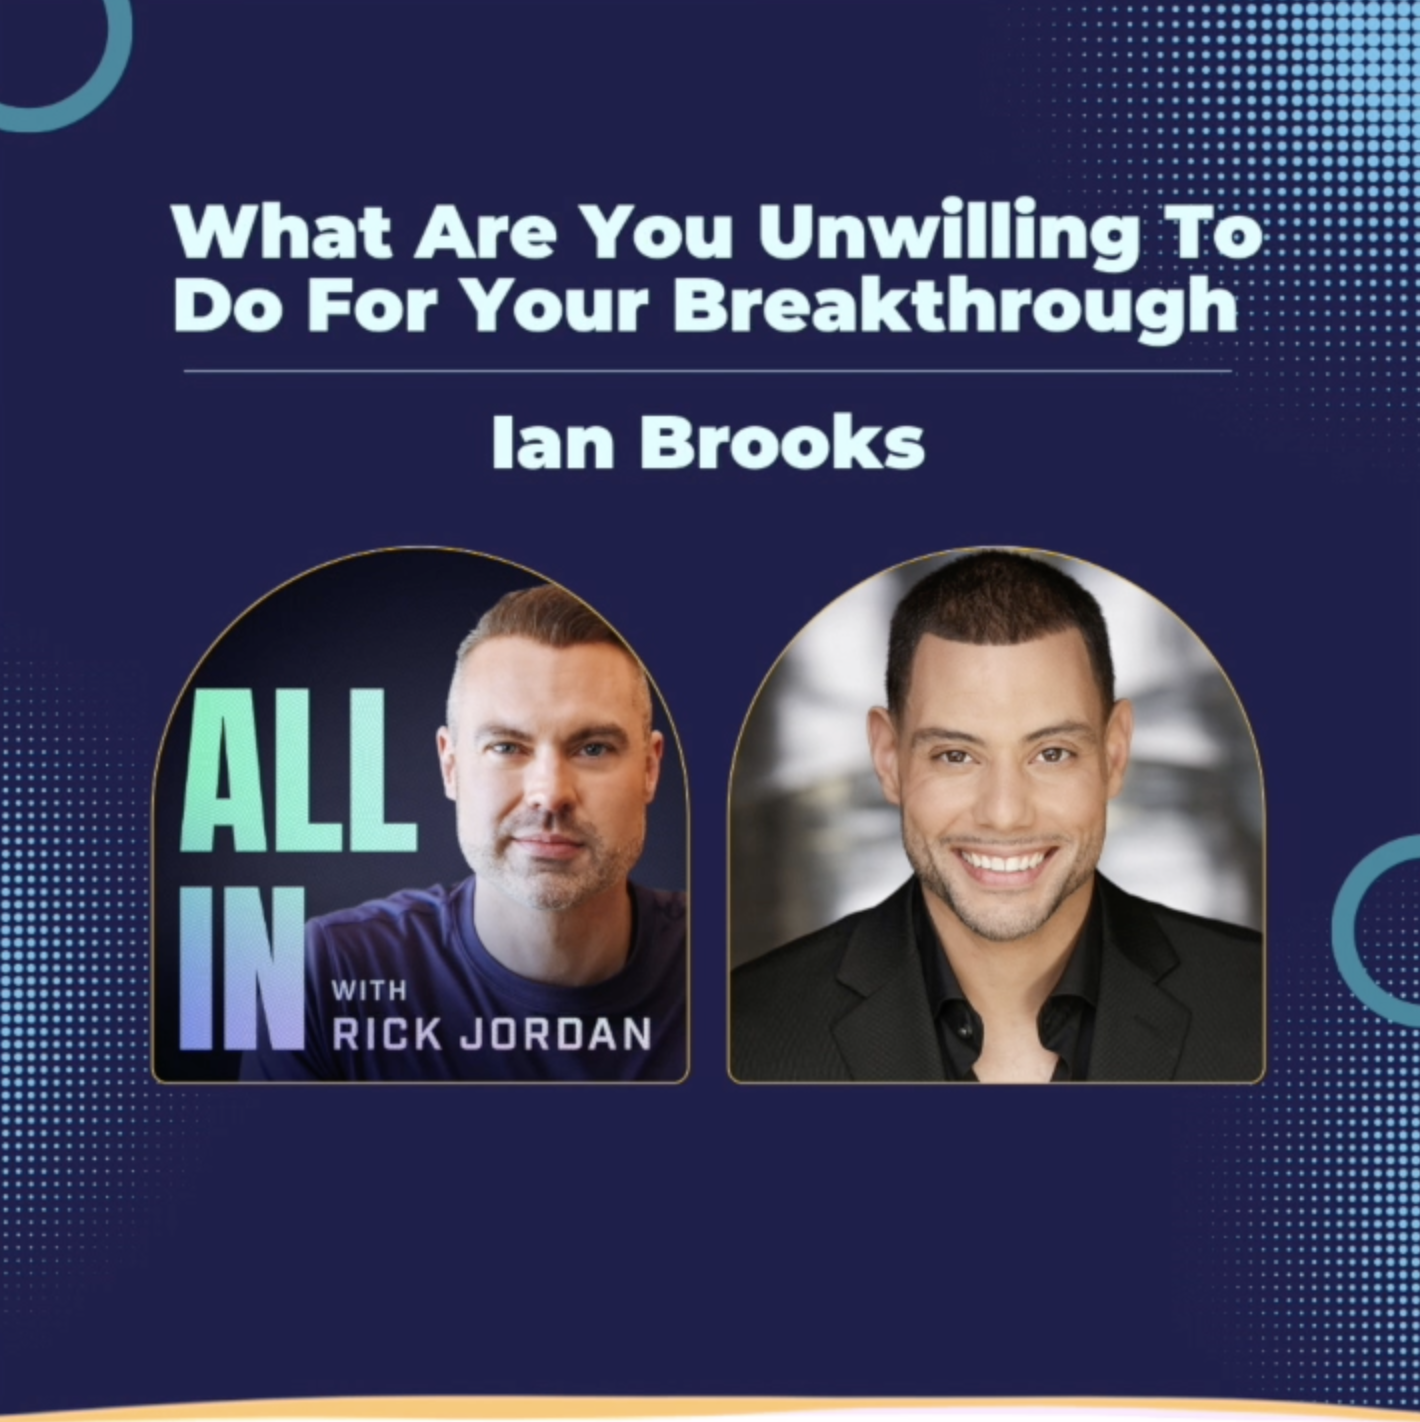 Ian Brooks on All In With Rick Jordan